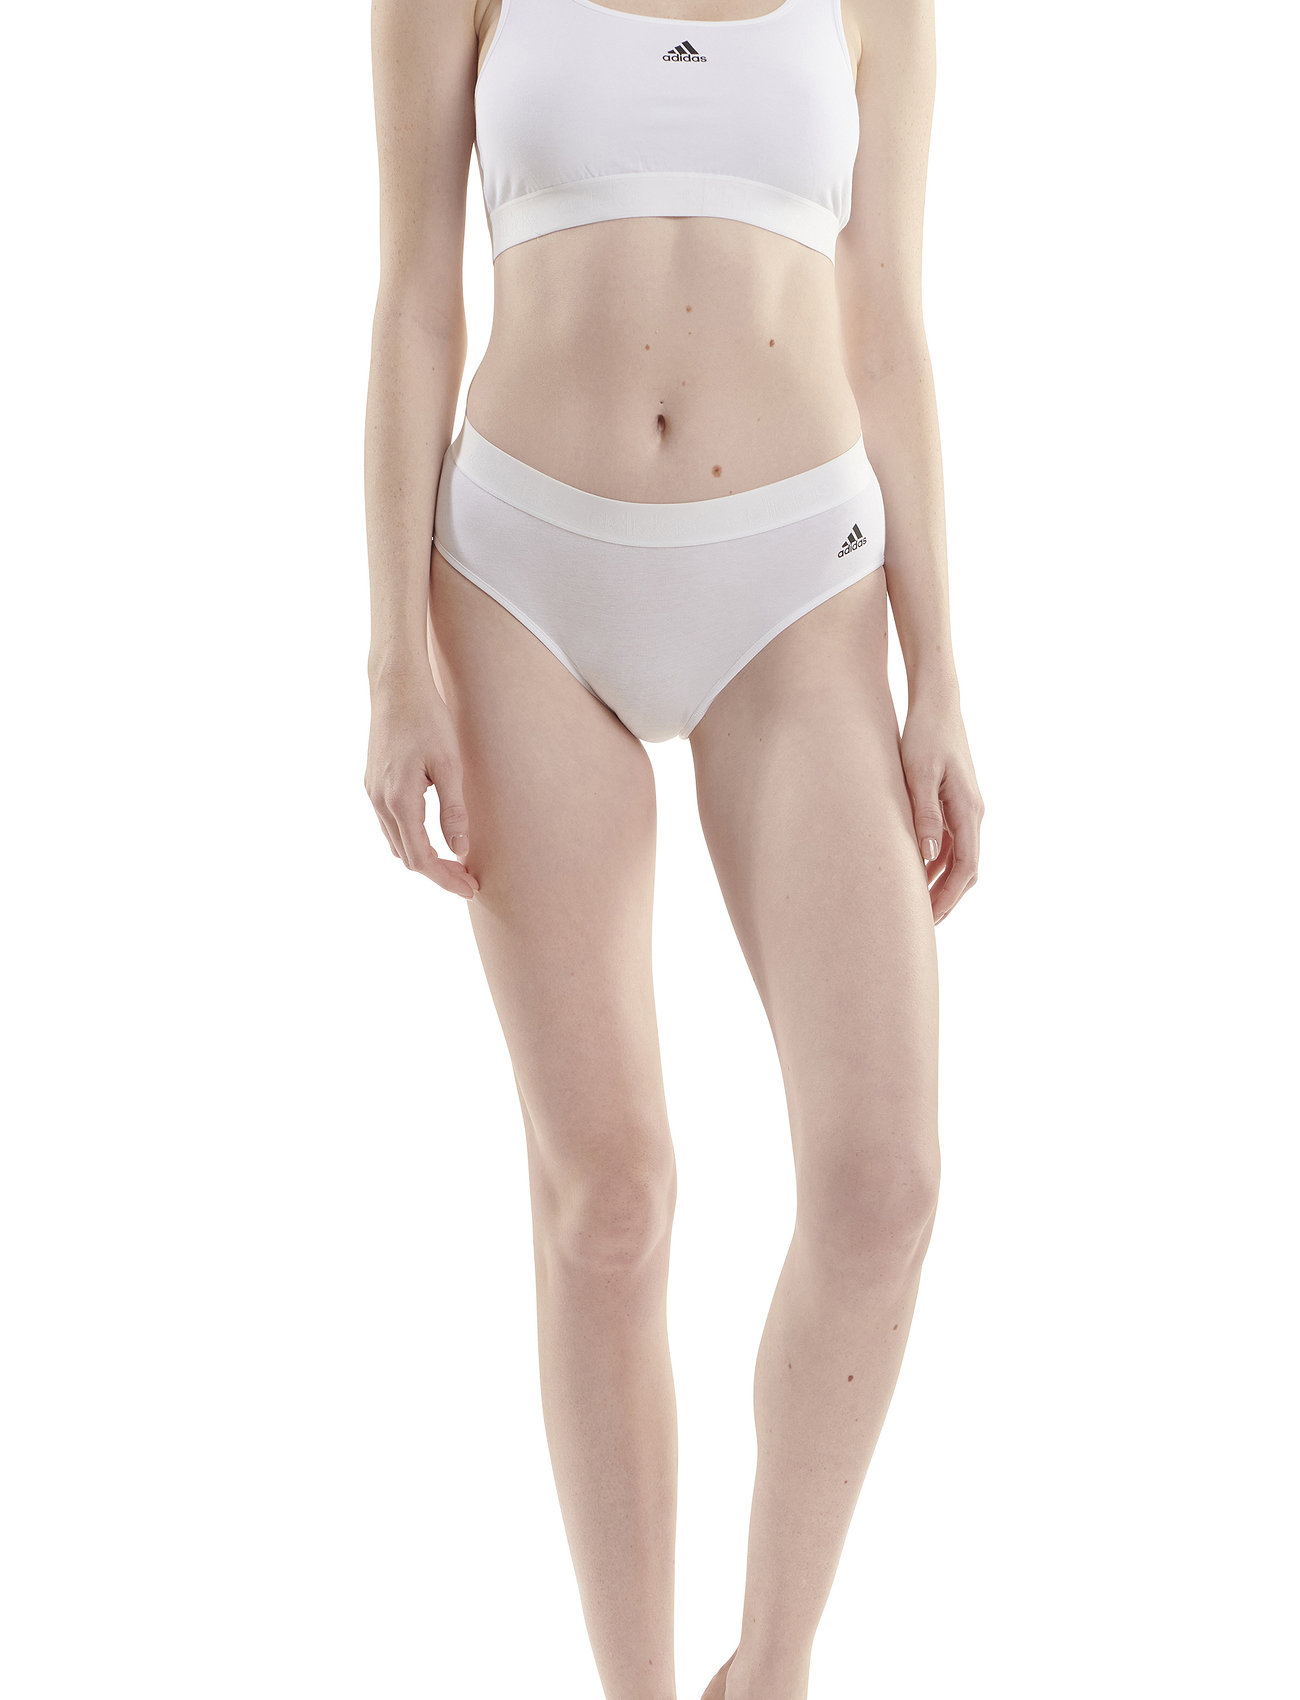 adidas Underwear Bustier - Sports bras